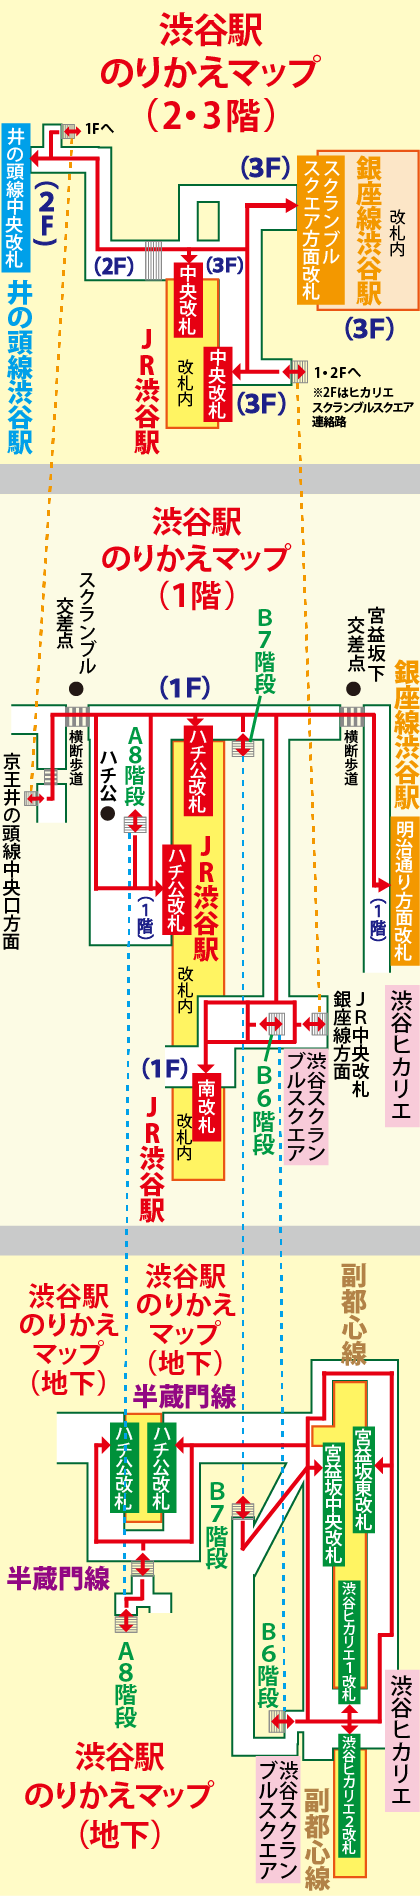 渋谷駅わかりやすい構内図（のりかえマップ）